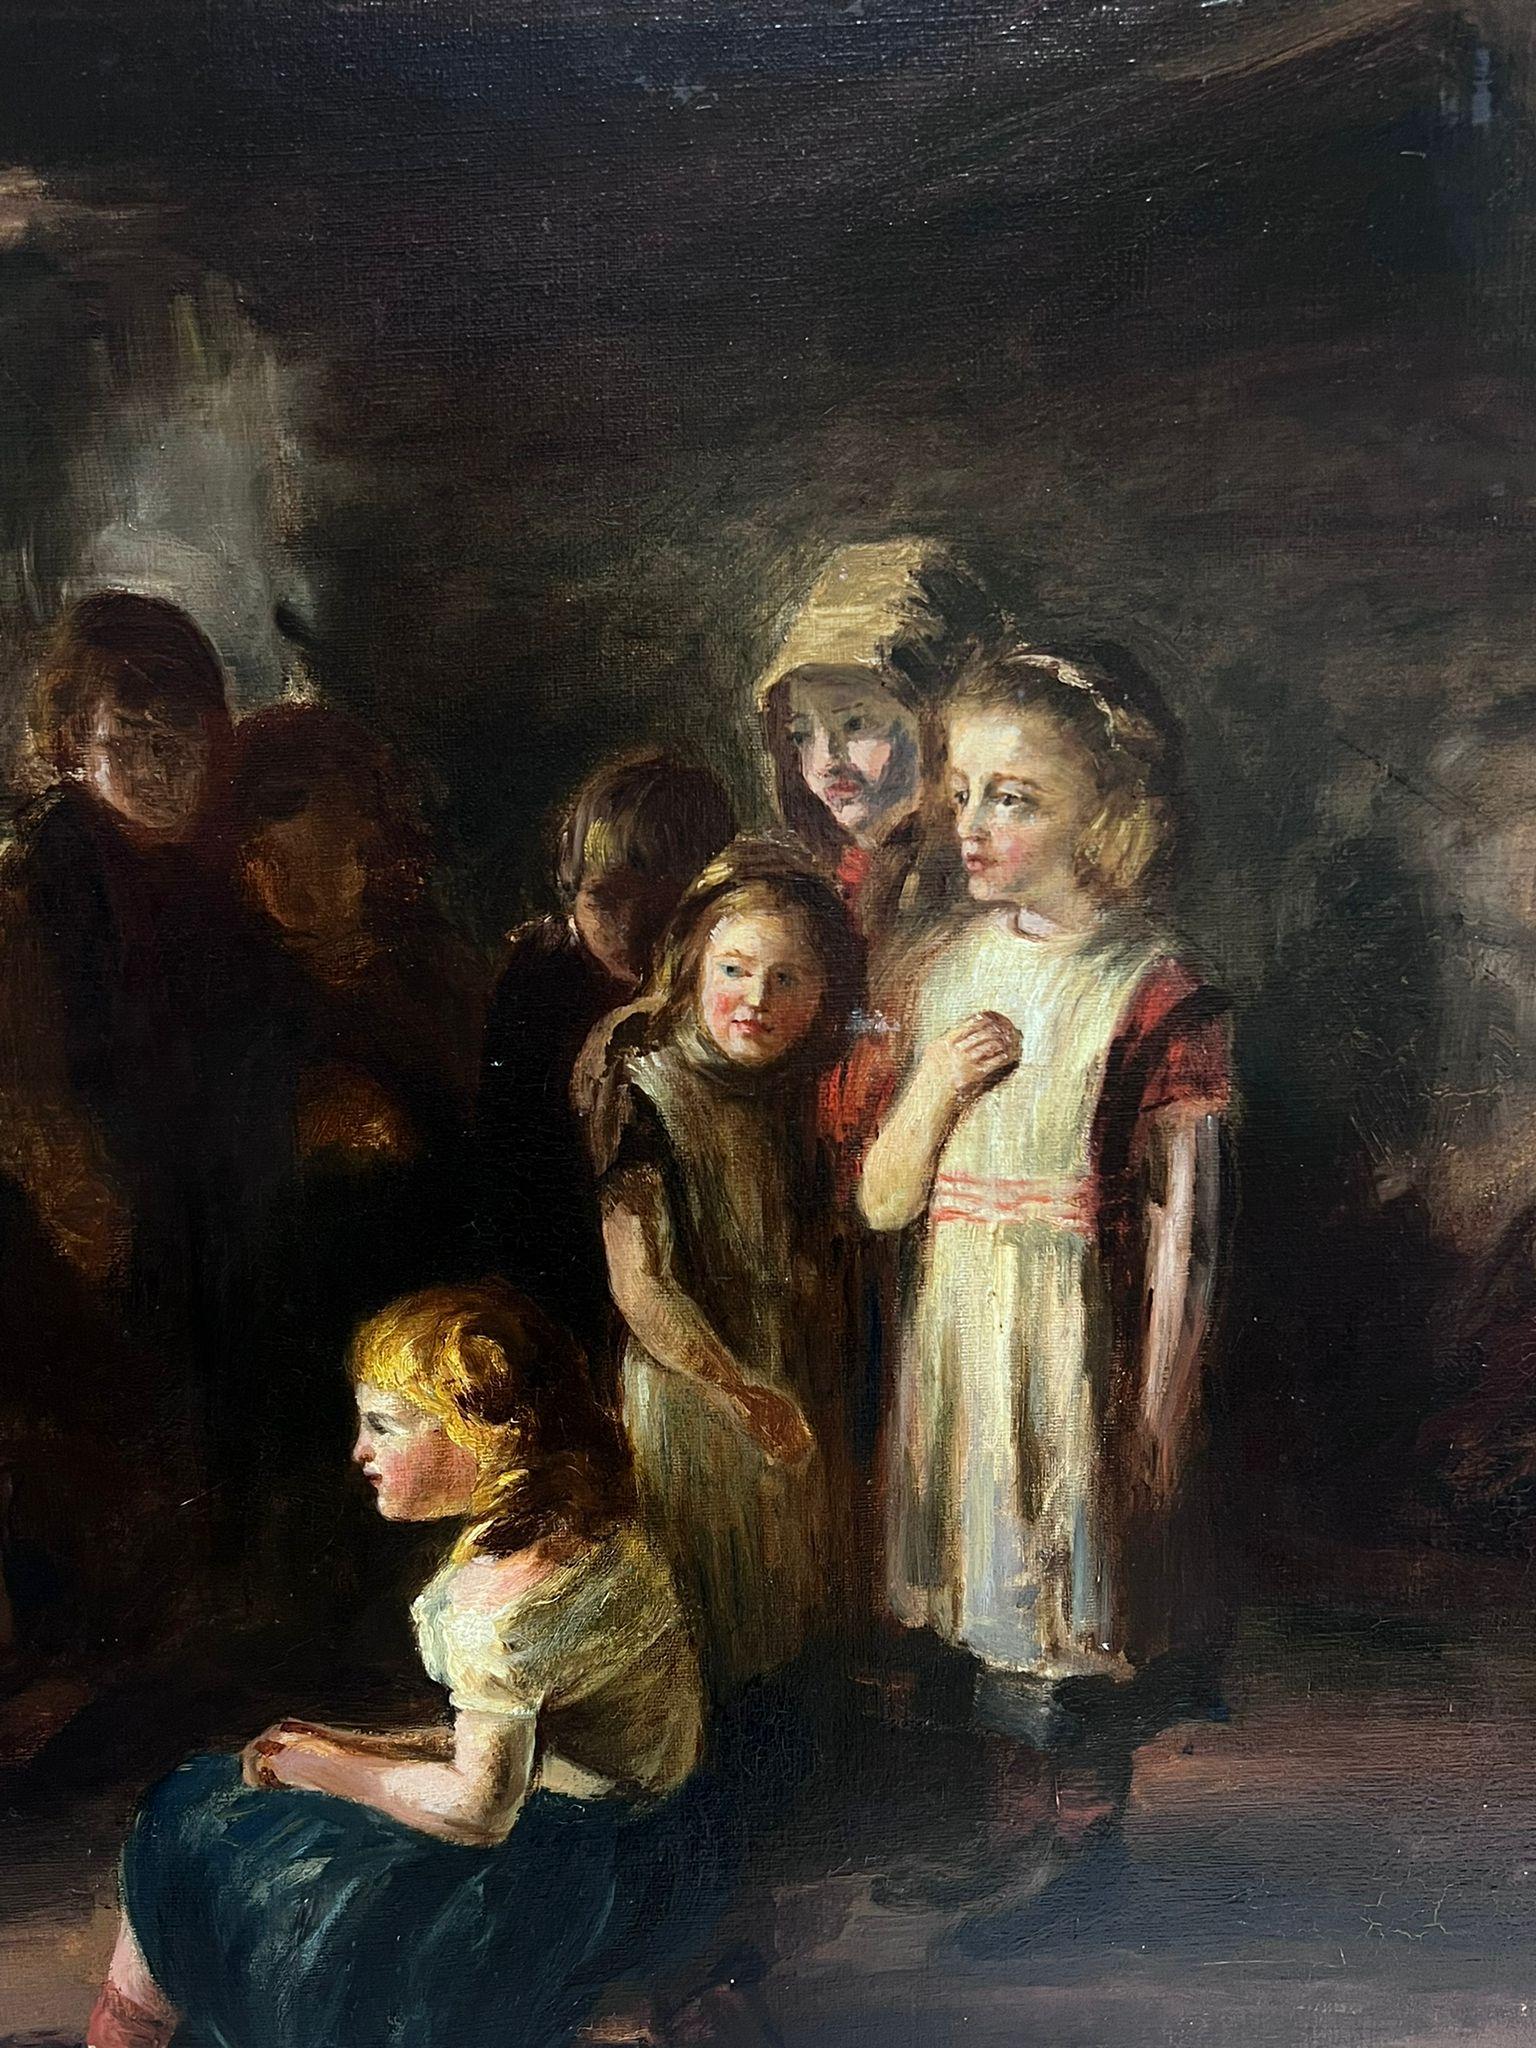 Großes viktorianisches englisches Ölgemälde, Cottage Interior mit vielen Kindern, viktorianisches Ölgemälde – Painting von Victorian English